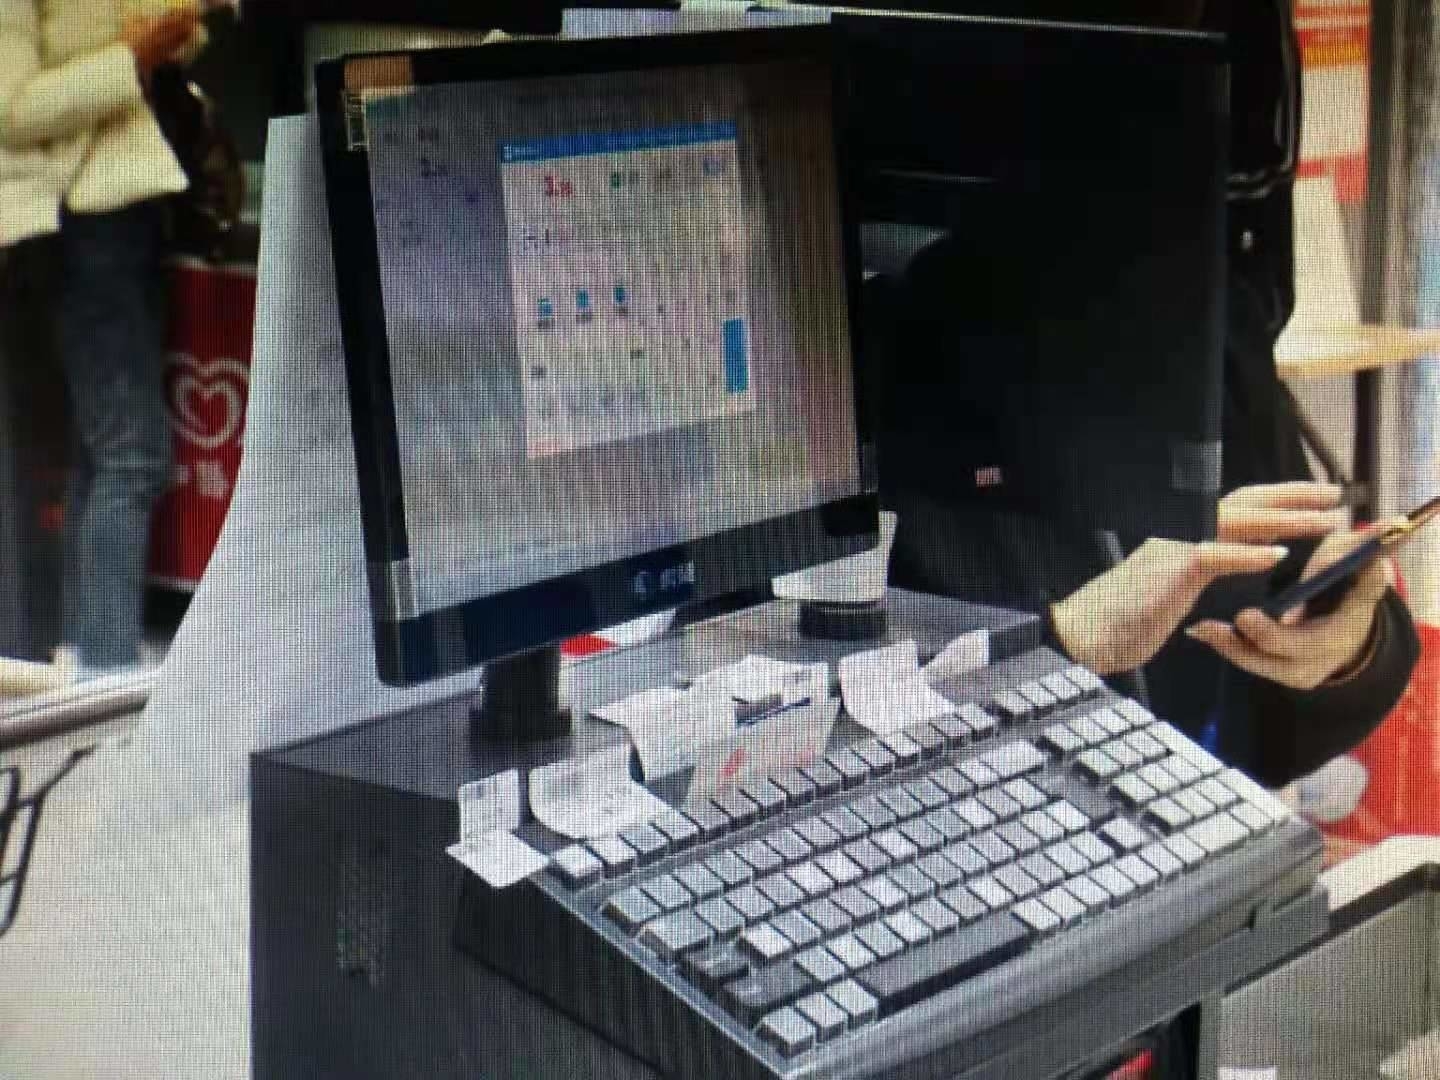 温州一超市收银系统瘫痪 疑遭“黑客”入侵 警方已介入